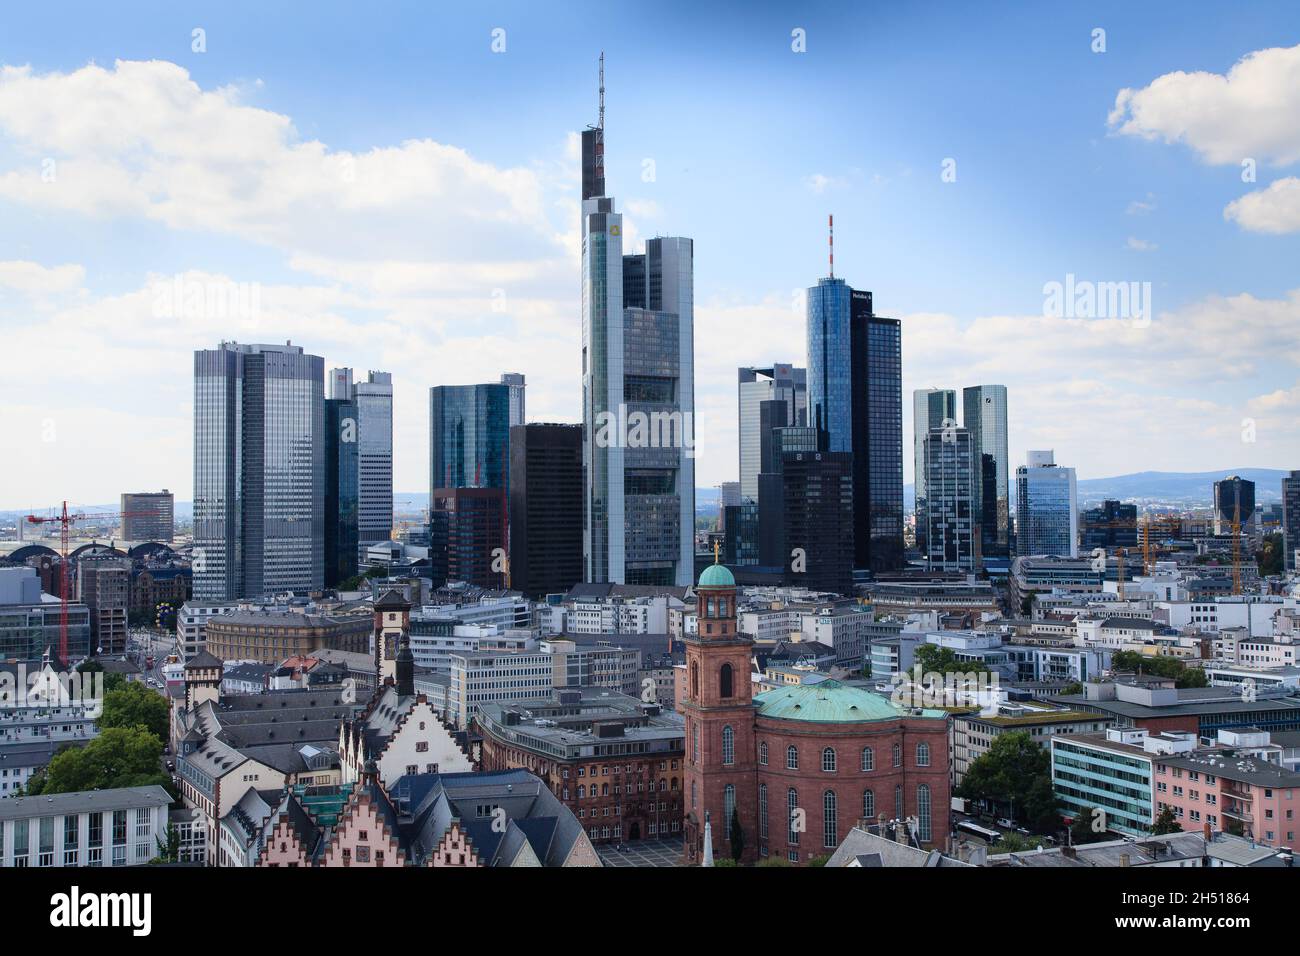 Panorama urbain de la ville bancaire de Francfort sur le fleuve main Allemagne.Avec les gratte-ciel et l'église Saint-Paul Banque D'Images